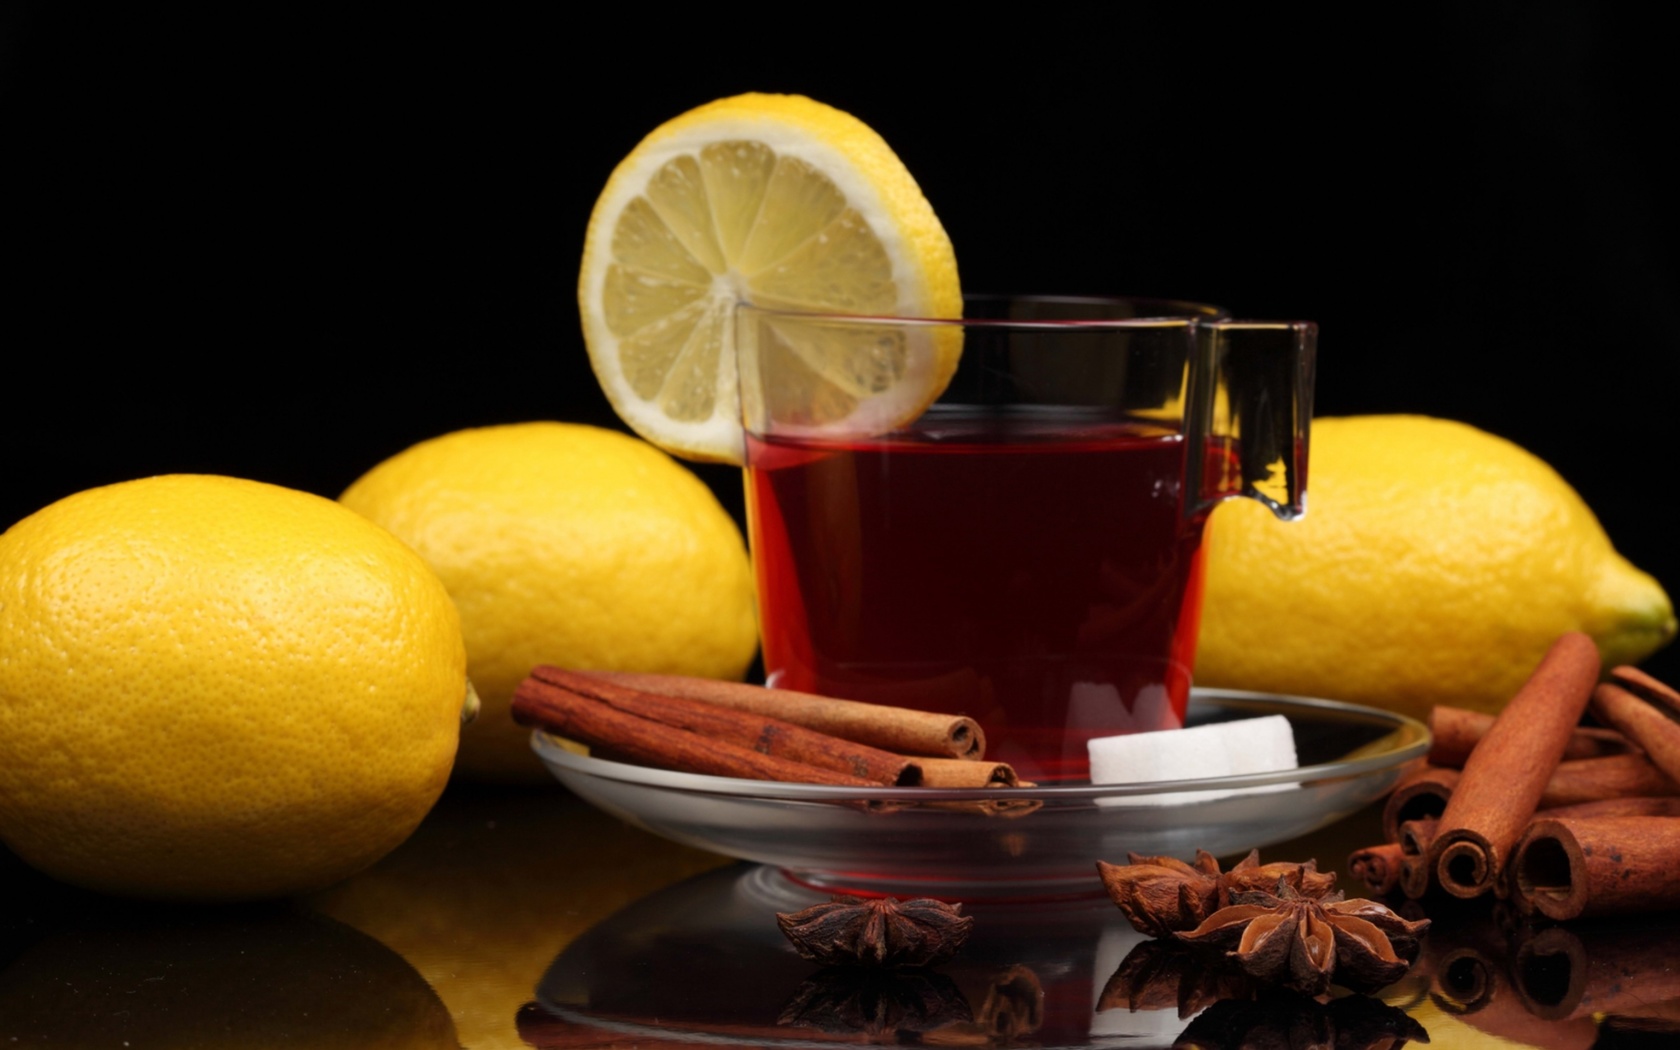 Das Tea with lemon and cinnamon Wallpaper 1680x1050